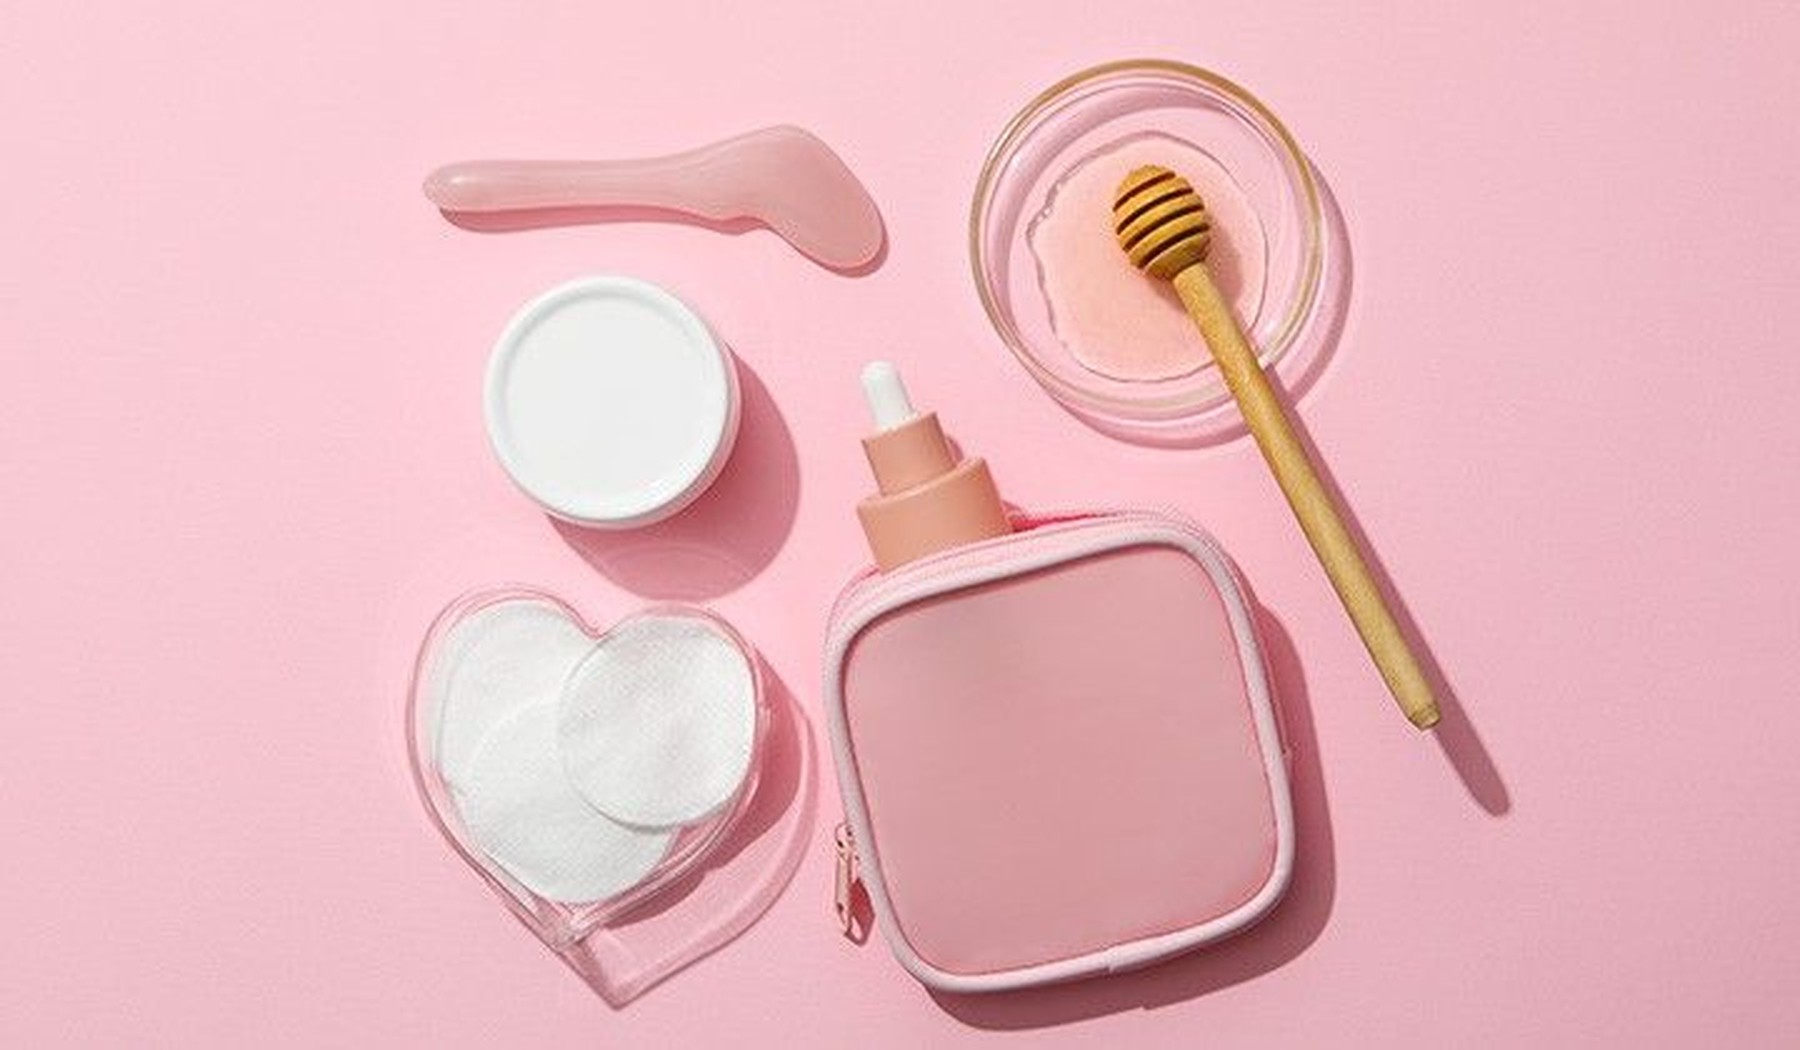 Objetos y productos para el cuidado de la piel sobre un fondo rosa